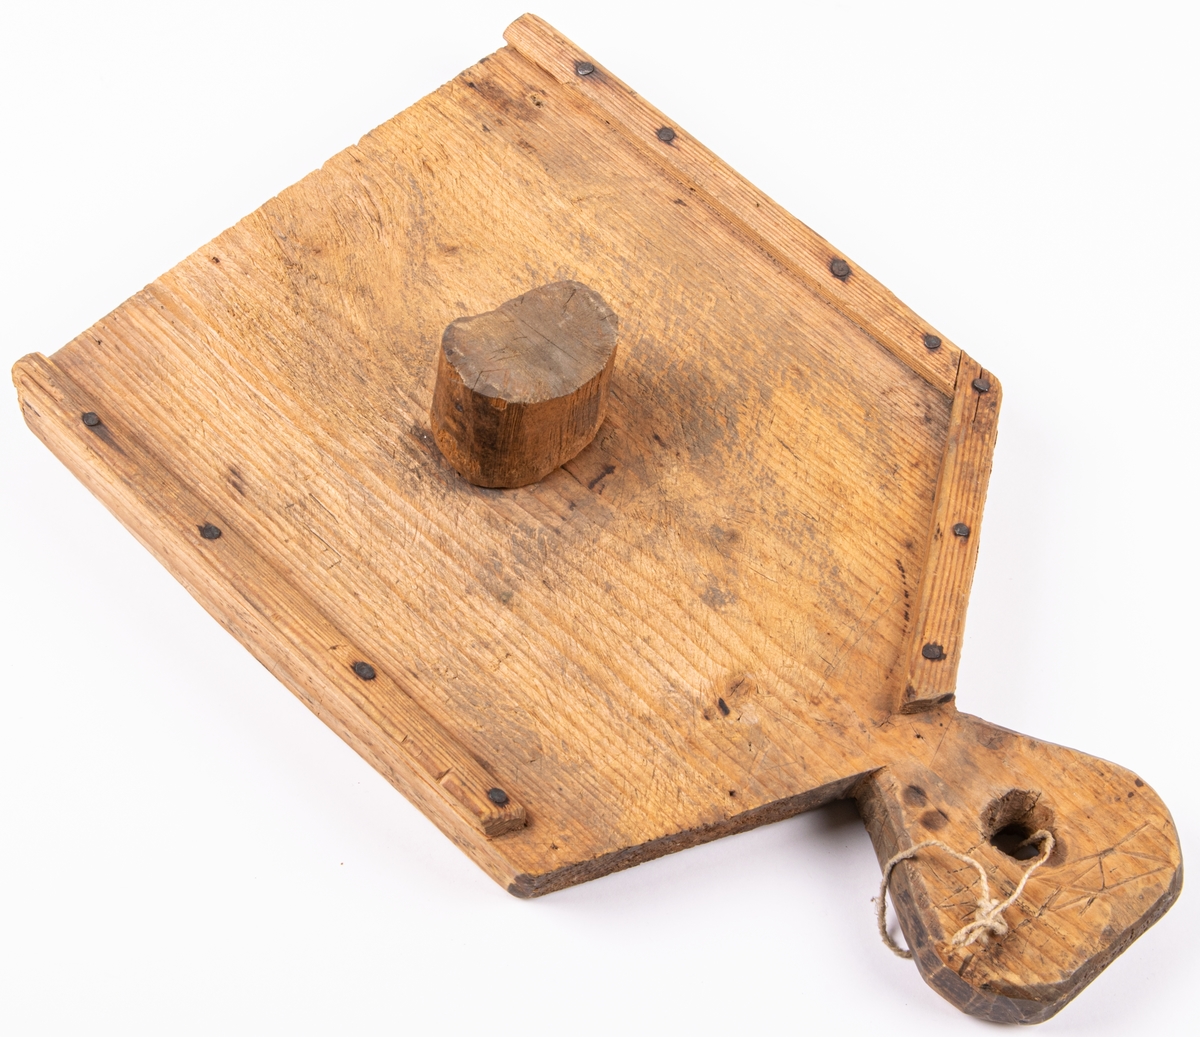 Karvbräde, skärbräda för tobak, av trä /fur eller gran/. Handtag i ena änden, smala lister påspikade utmed kanterna, samt i mitten en träkubbe islagen.